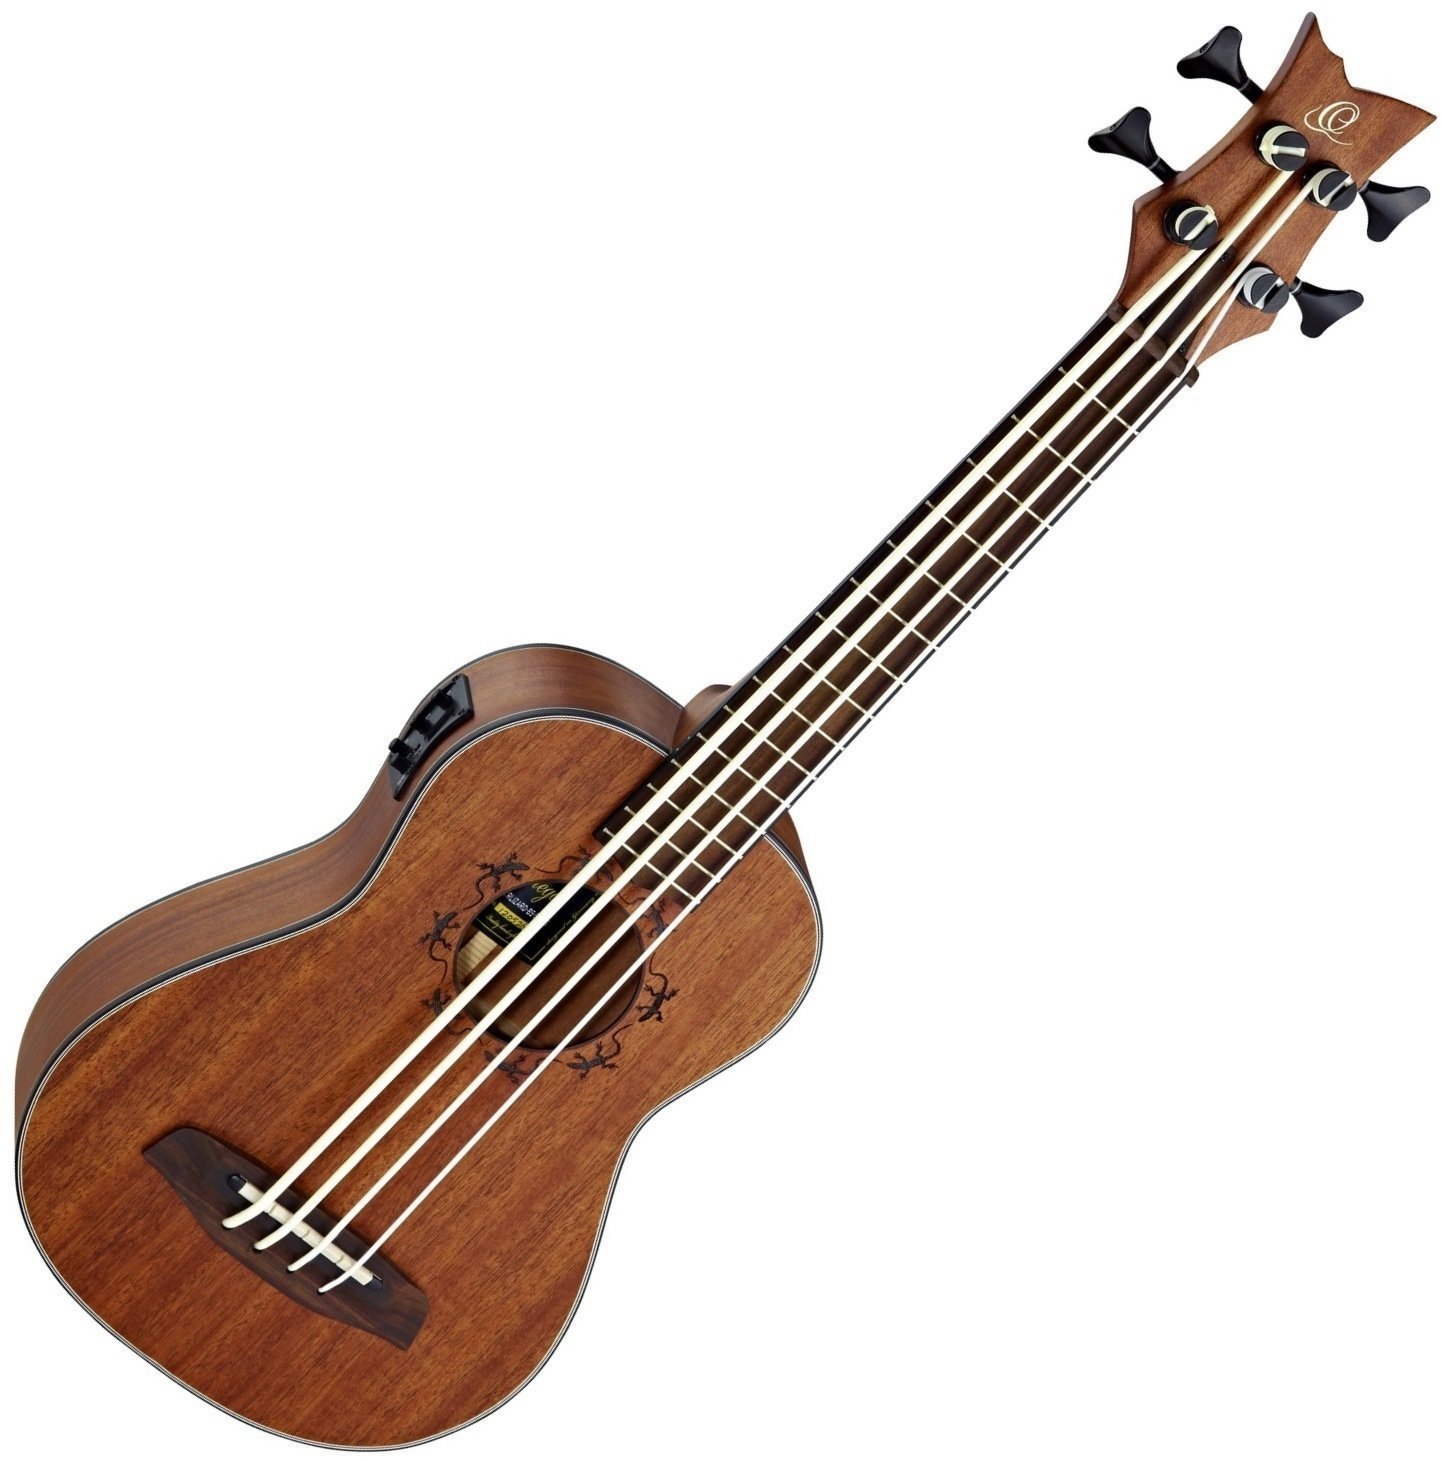 Bas ukulele Ortega Lizzy Bas ukulele Natural